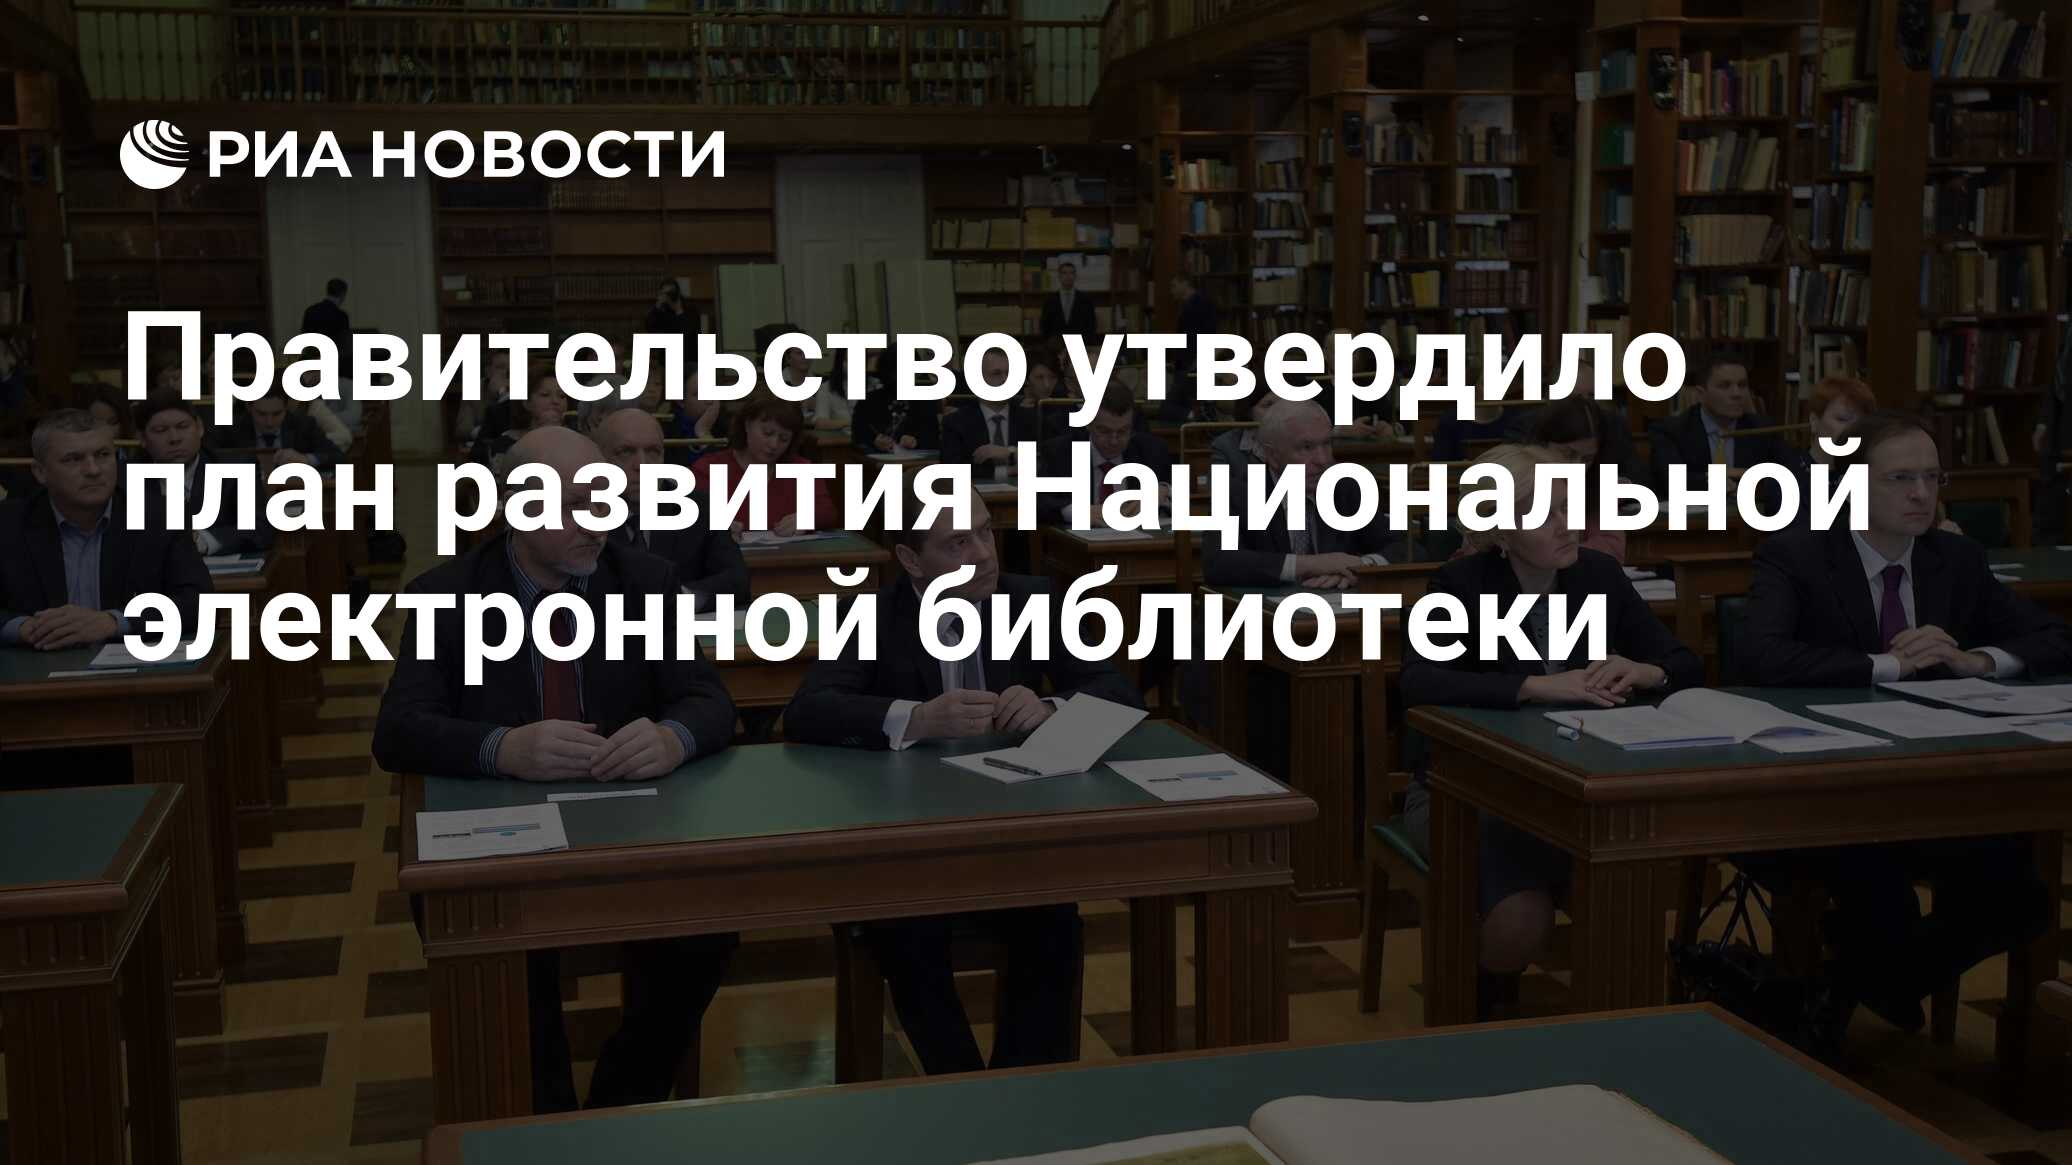 Библиотека риа новости. Библиотека правительство Россия.